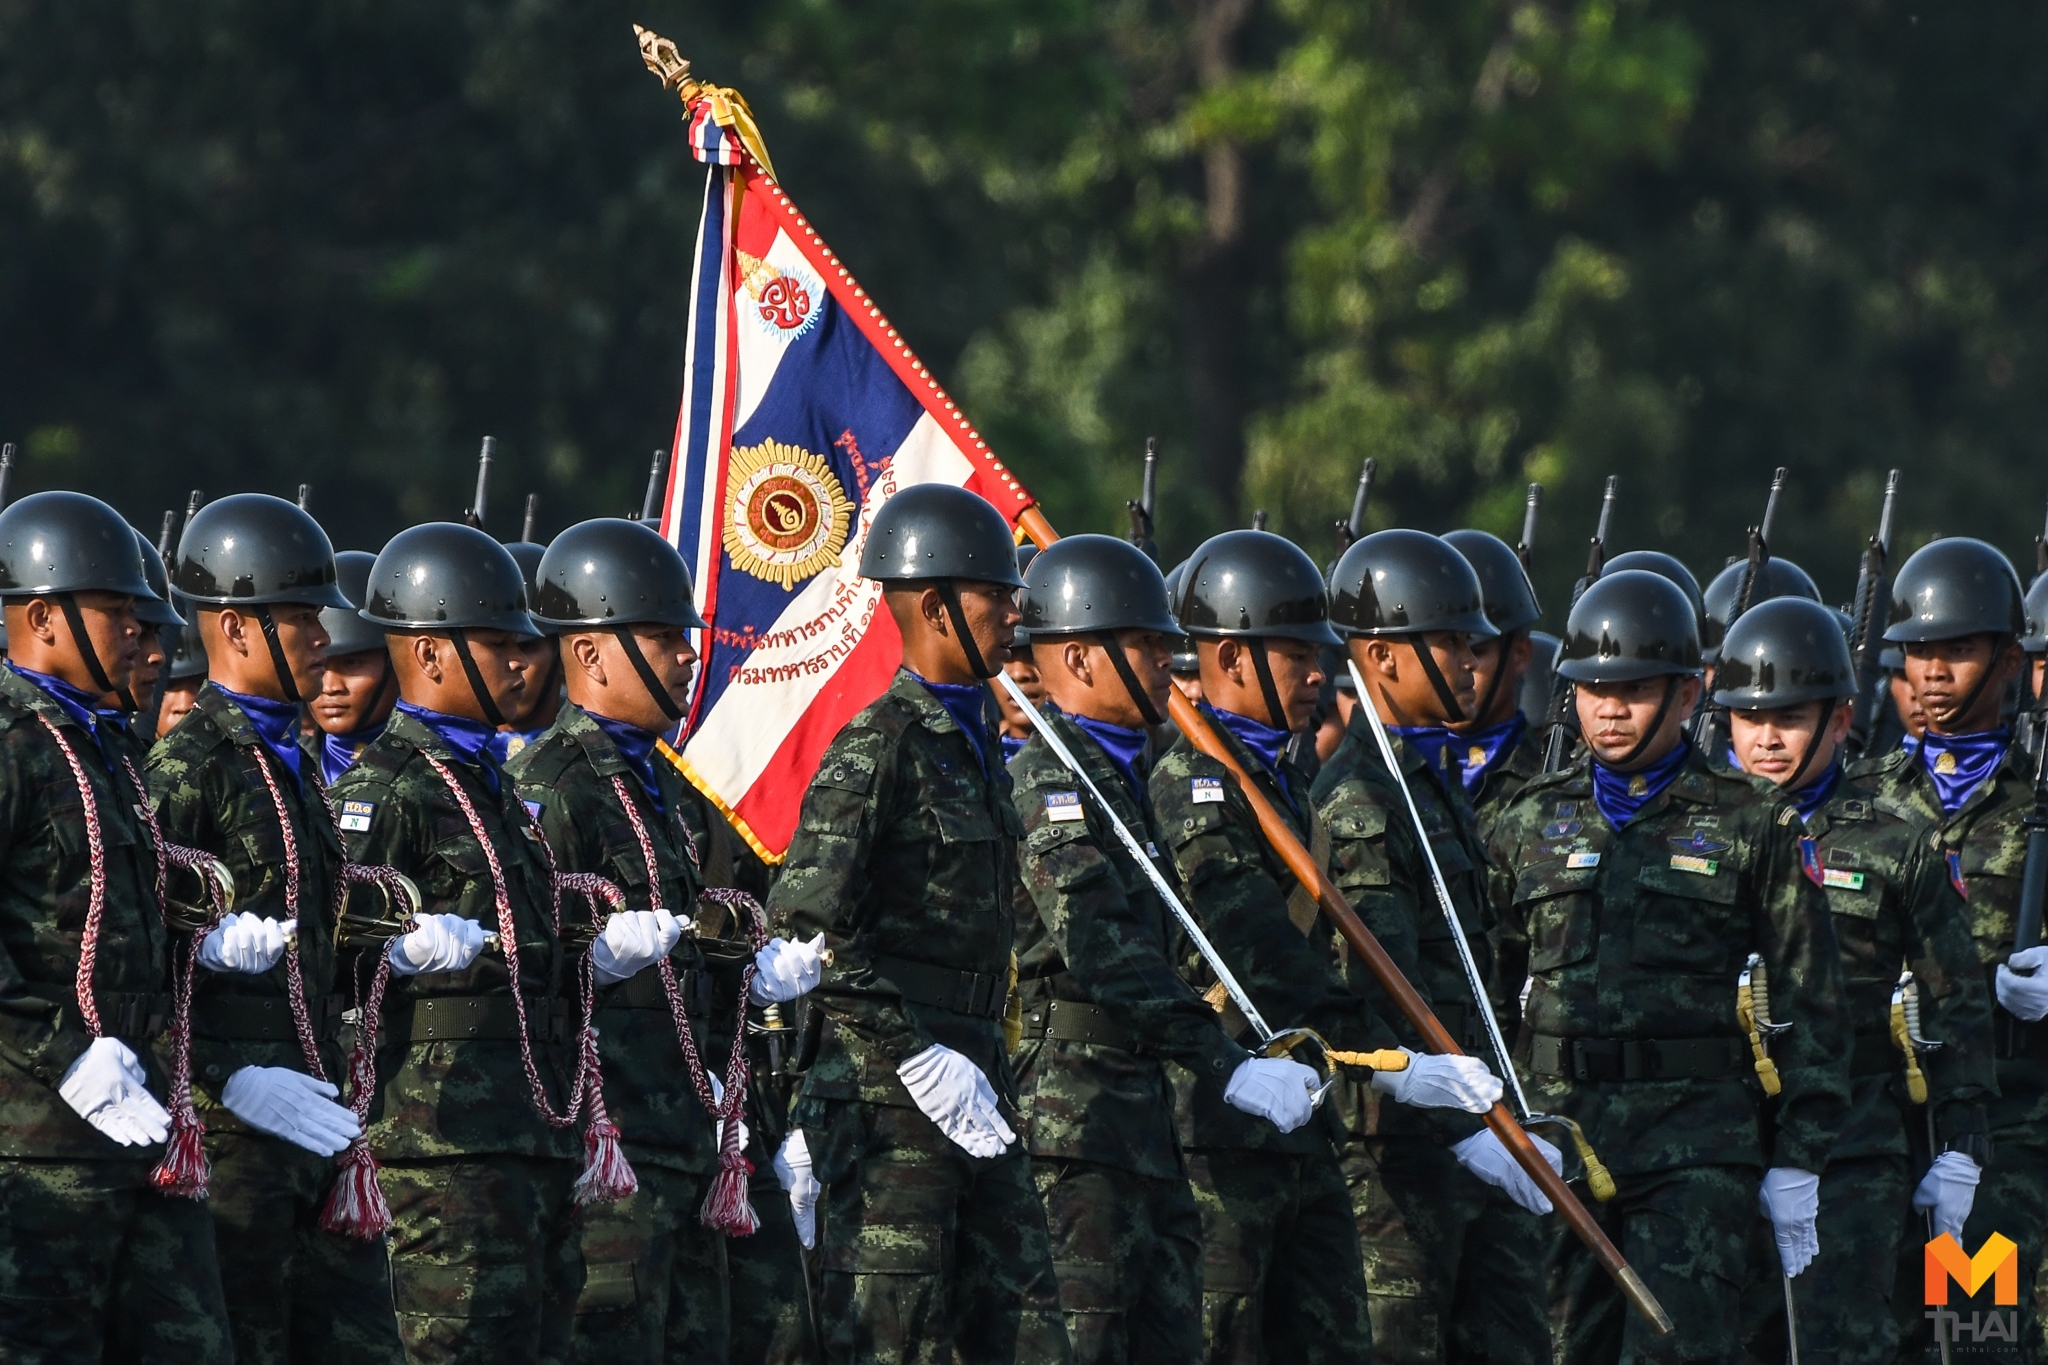 กองทัพไทย ทหาร ธงชัยเฉลิมพล ธงไชยเฉลิม